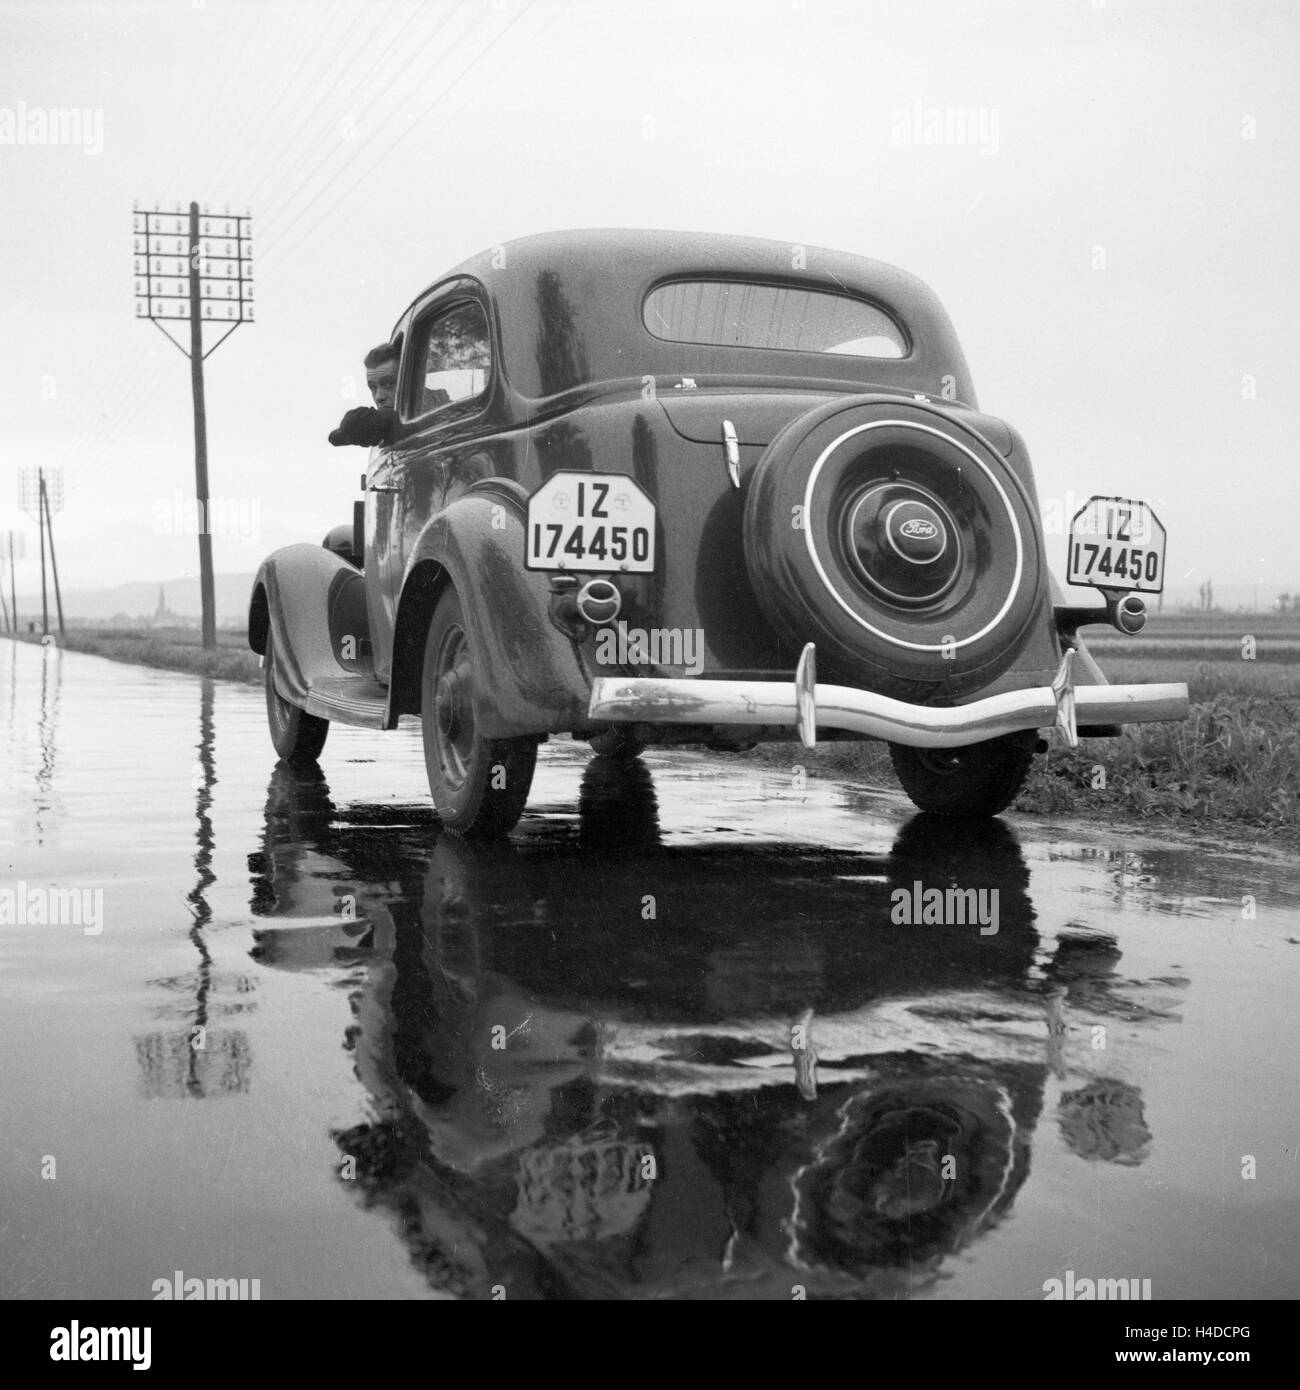 Mit dem Ford V8 auf regennasser Fahrbahn, Deutschland 1930er Jahre. With the Ford V8 on a wet street, Germany 1930s. Stock Photo